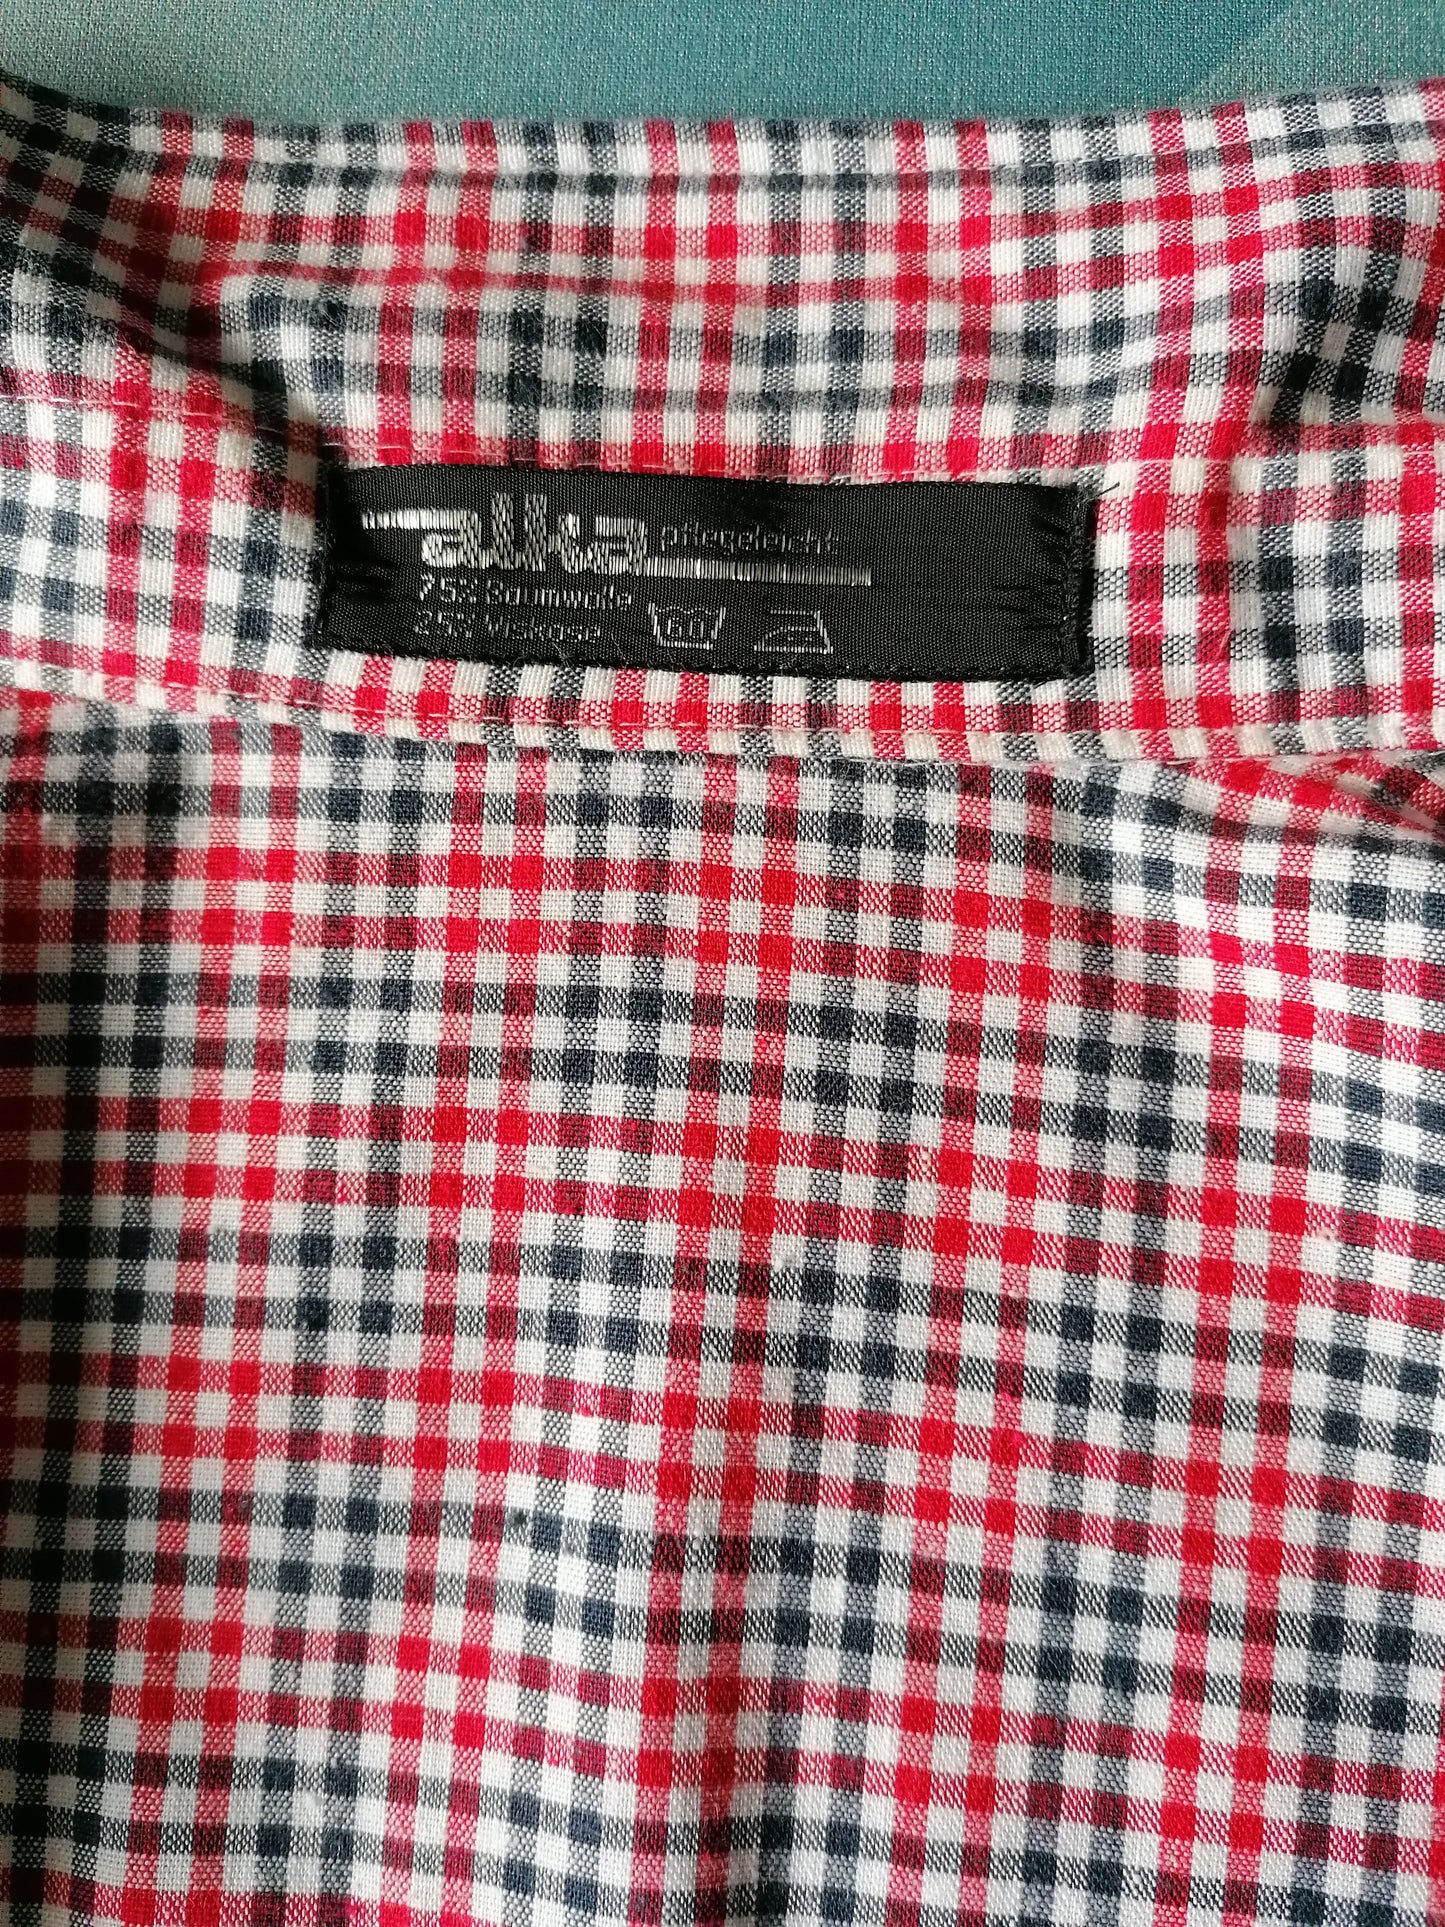 Vintage 70's Alka overhemd korte mouw. Rood Blauw Wit geblokt. Maat XL. 75% katoen & 25% viscose